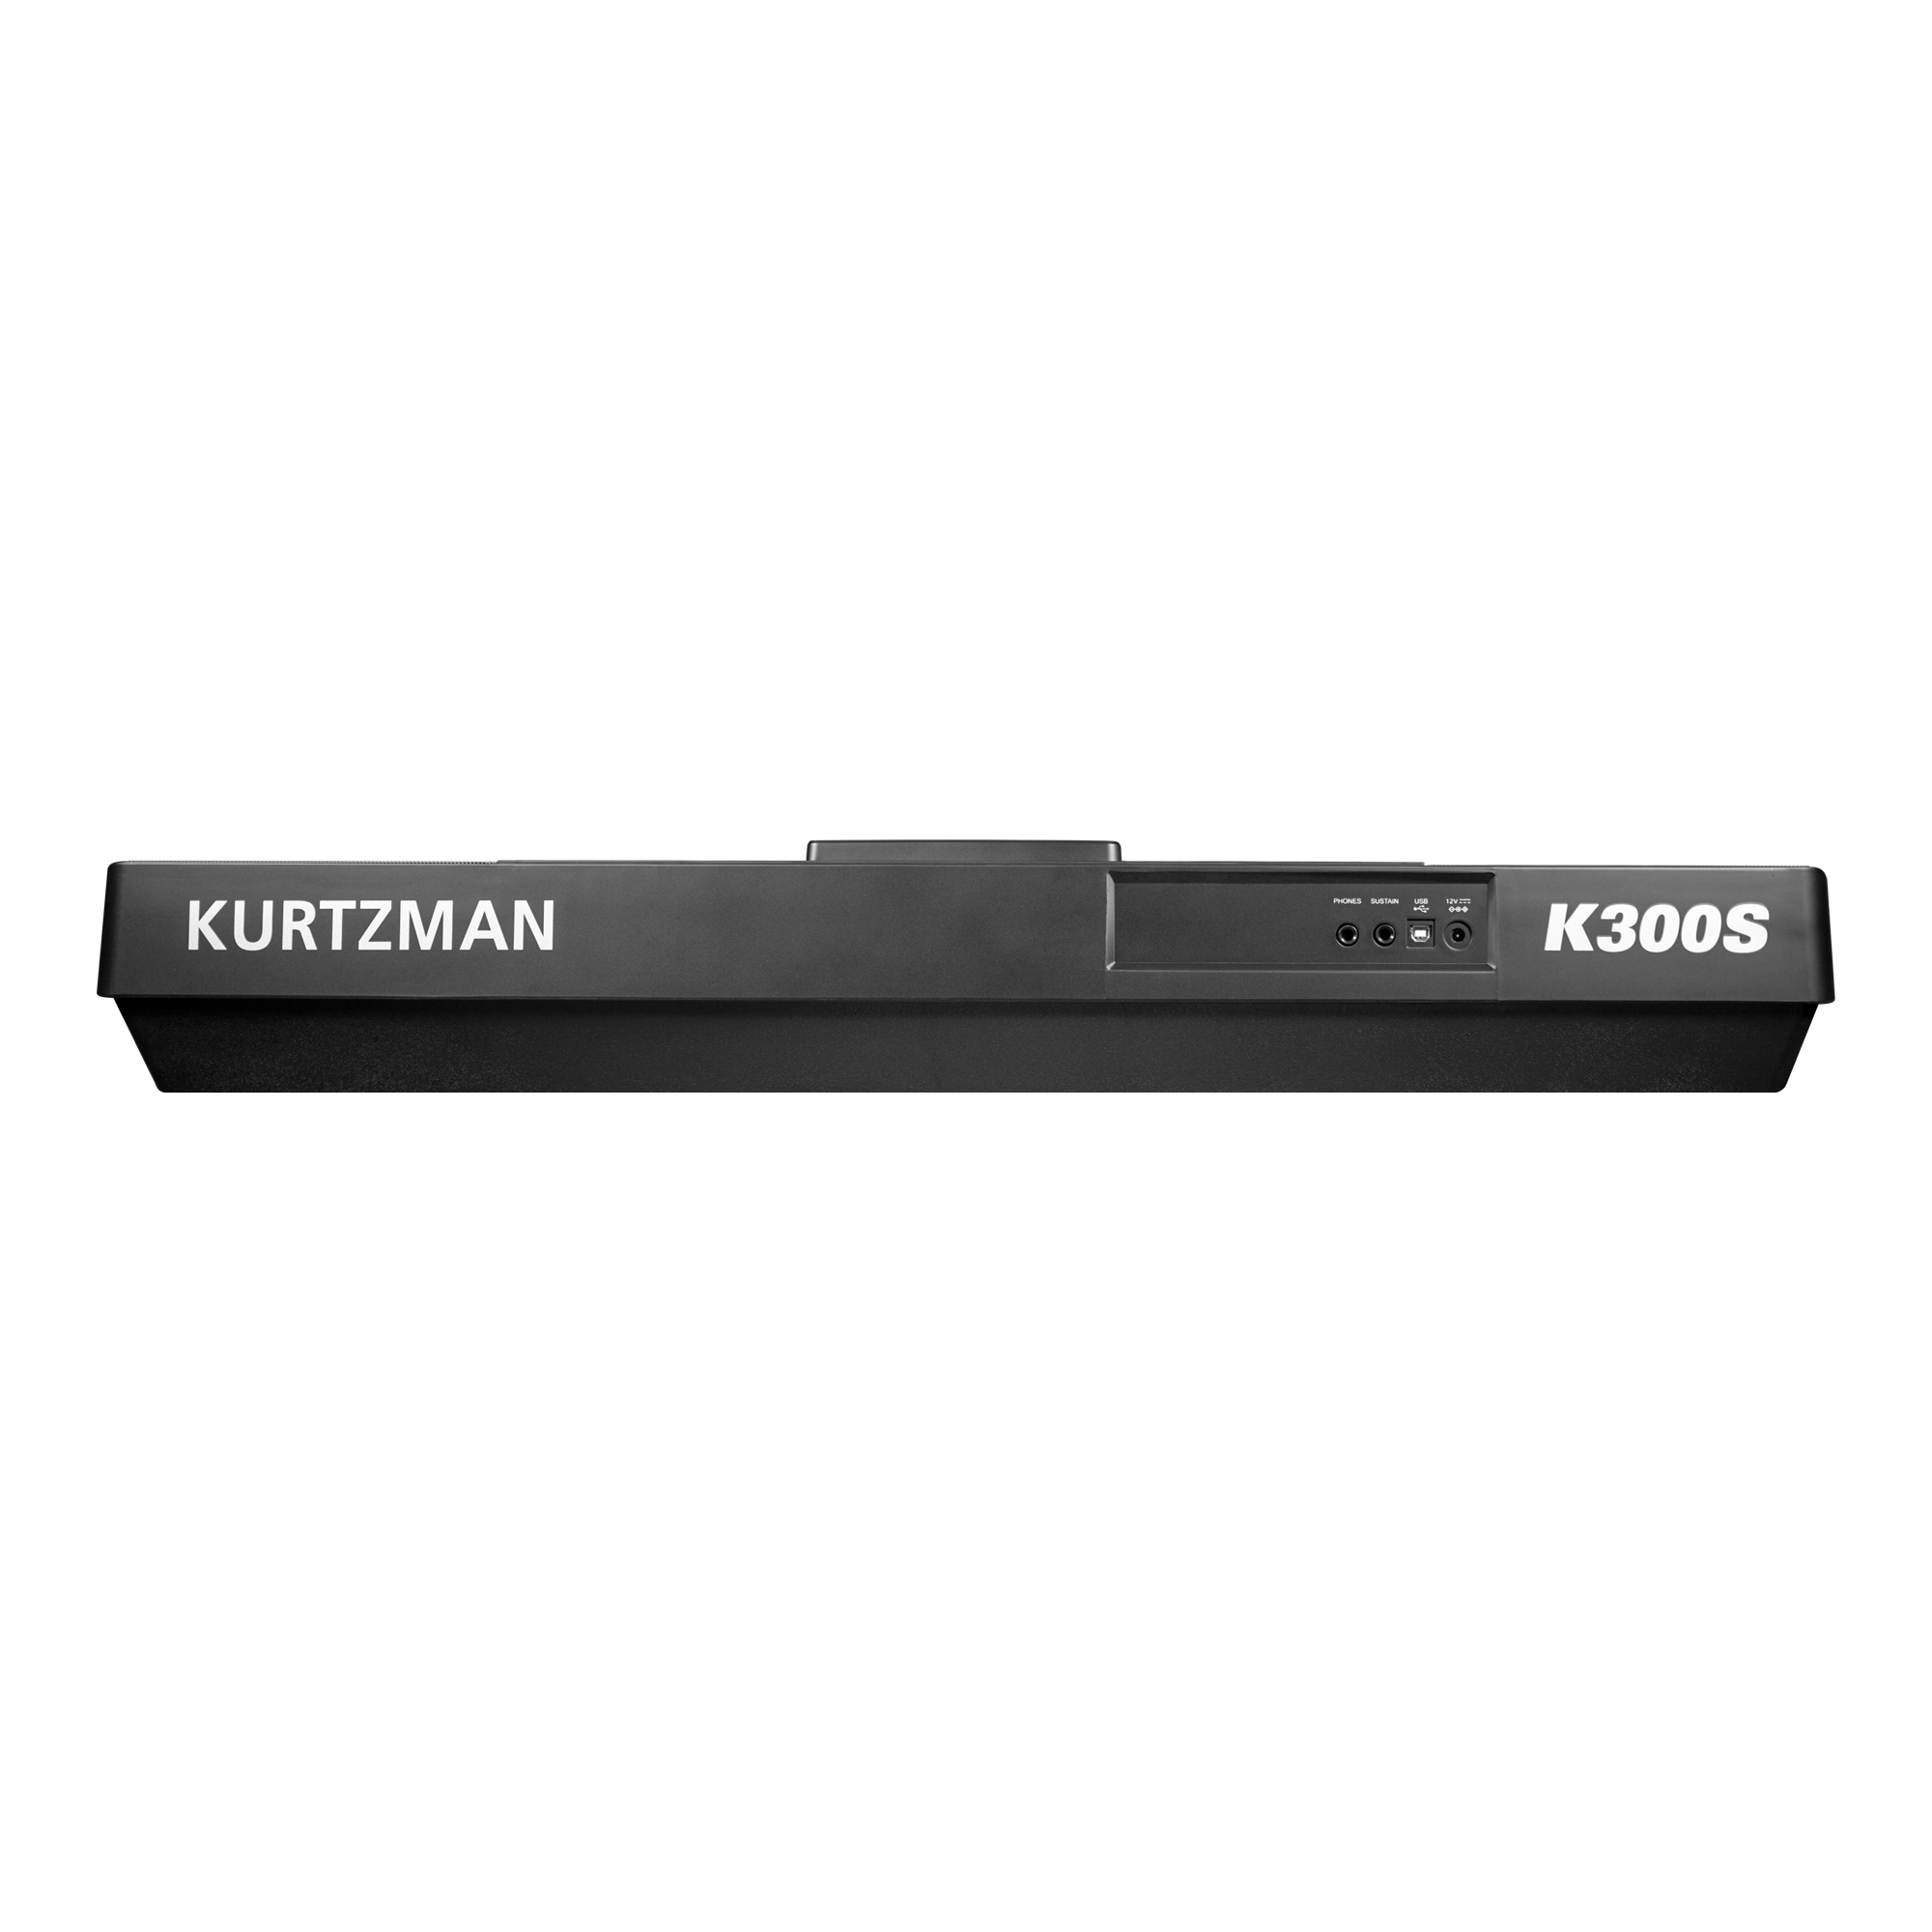 Đàn Organ điện tử, Portable Keyboard - Kzm Kurtzman K300S (K300 version 2) - Accompaniment keyboard - Hàng chính hãng